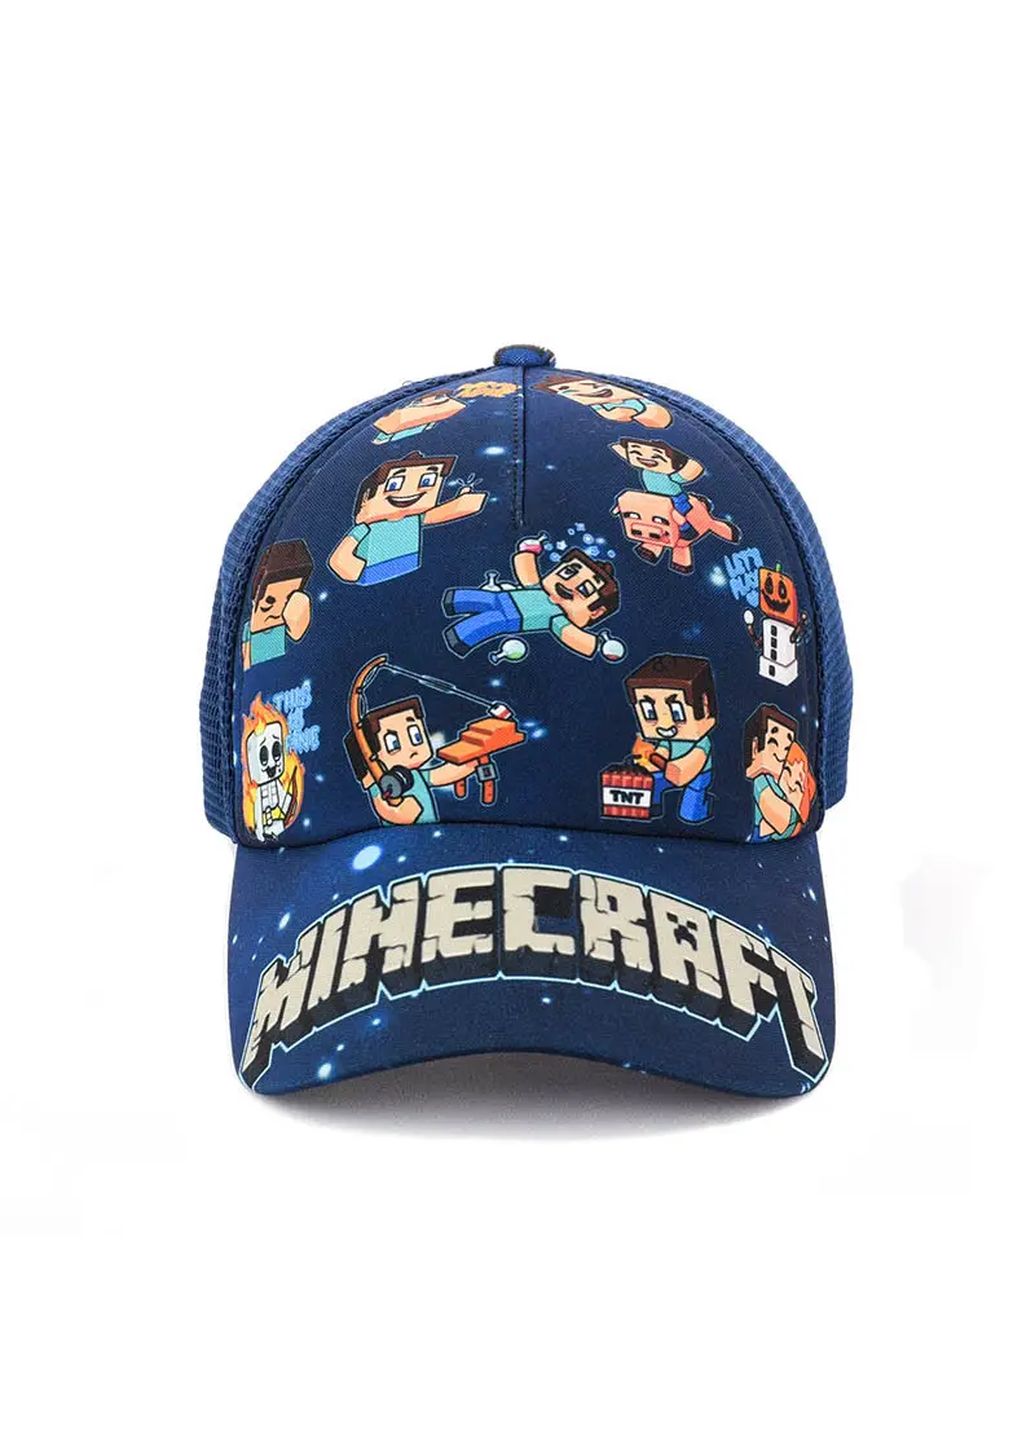 Детская кепка с сеткой Merlini Minecraft 53-55 см 740010